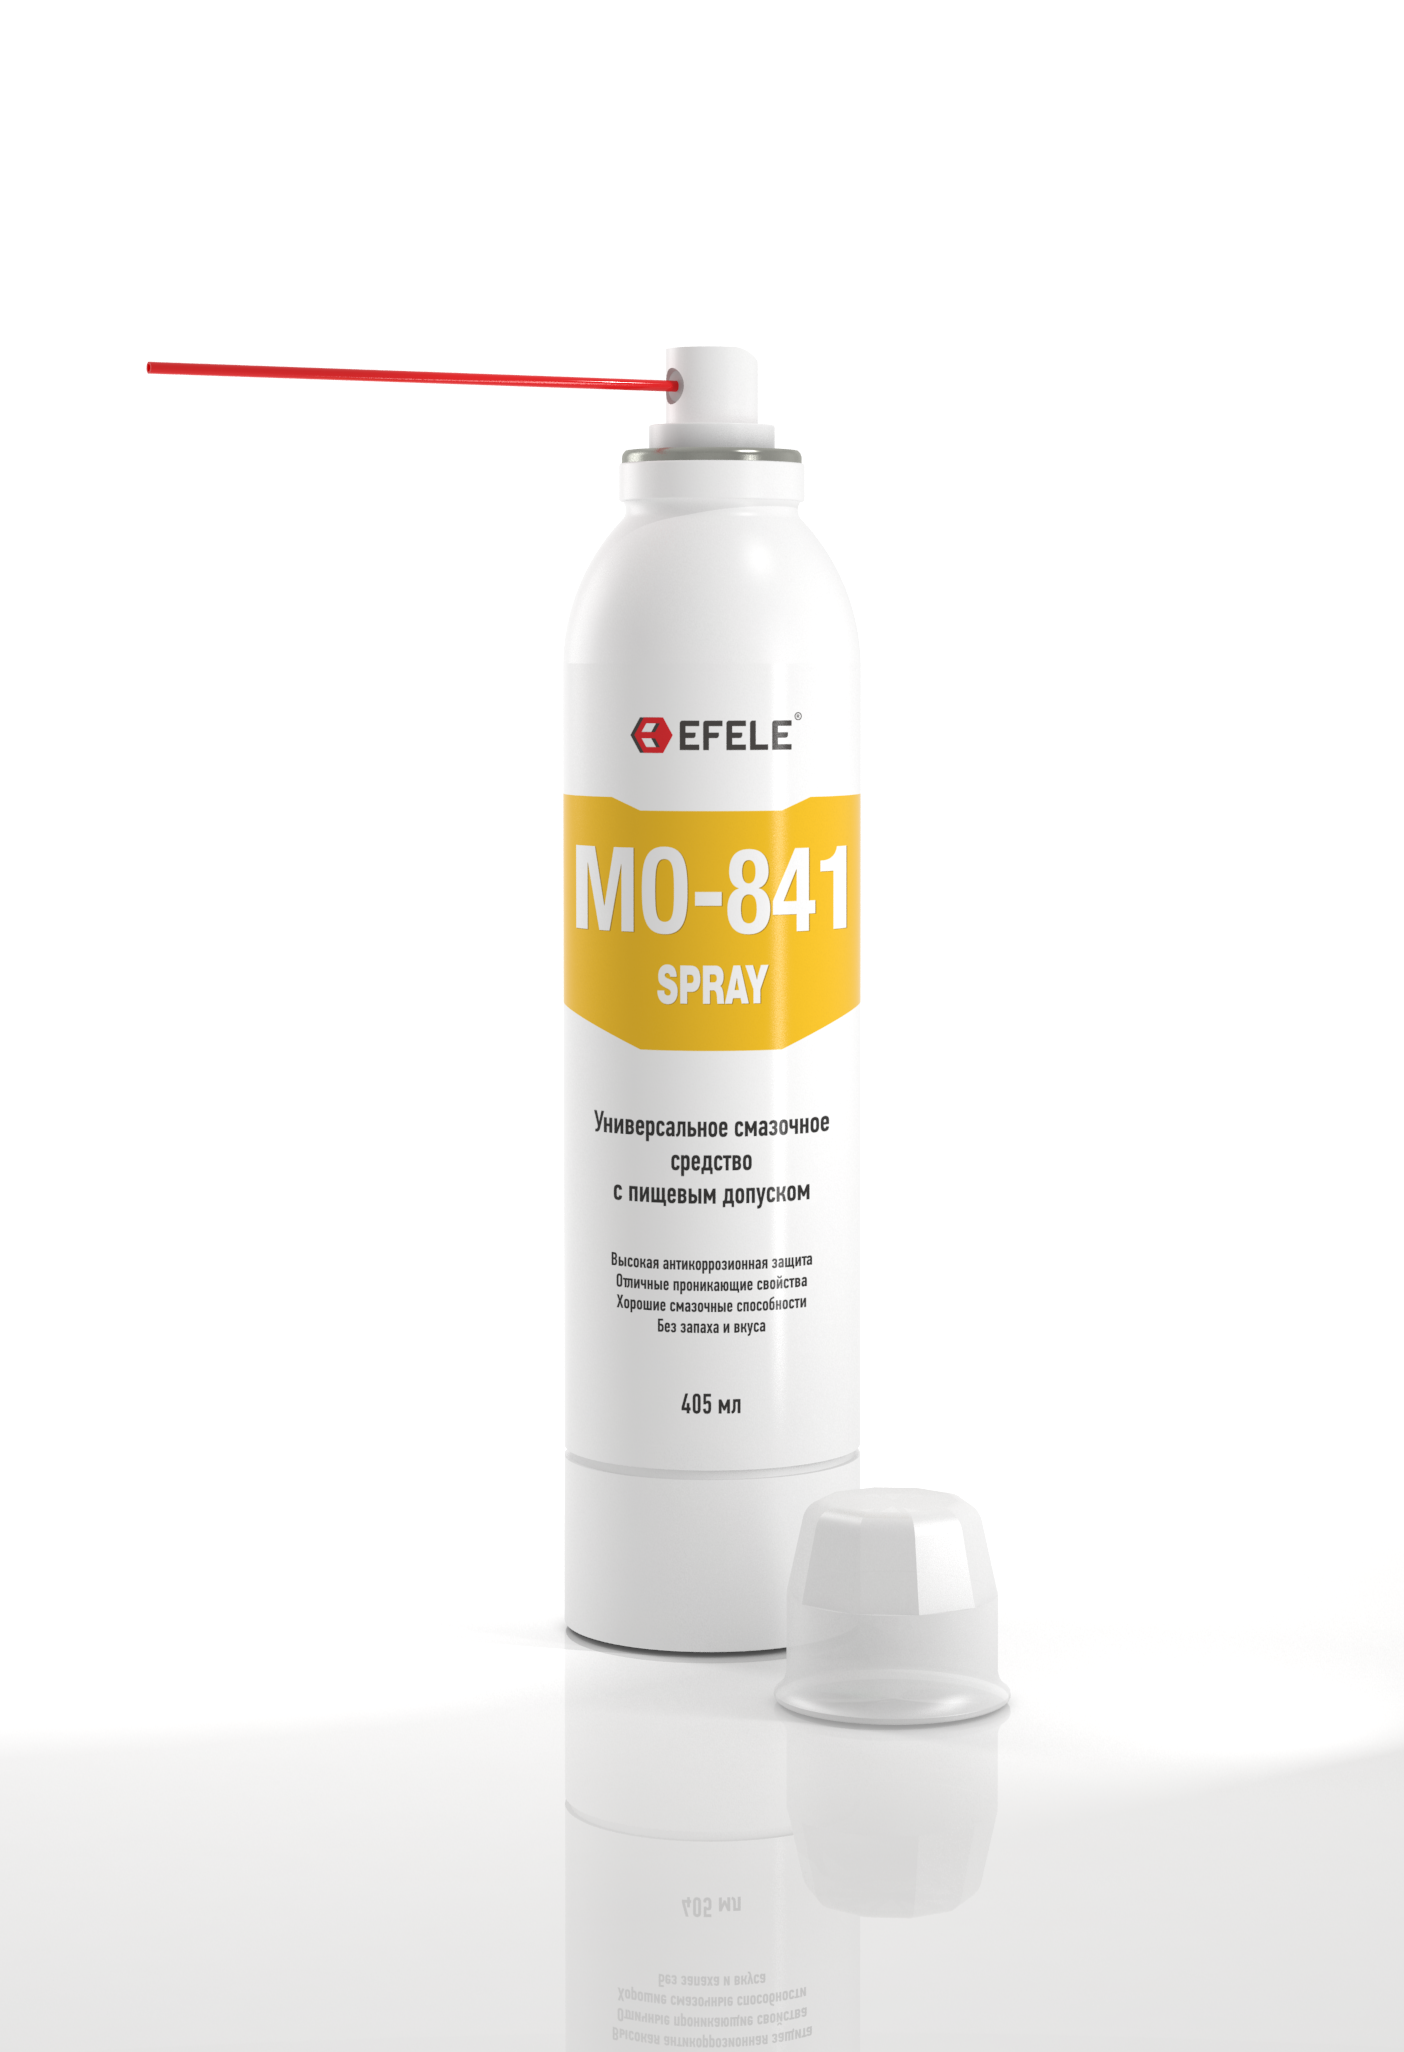 Масло универсальное с пищевым допуском Efele mo-841 spray (efl0091358)